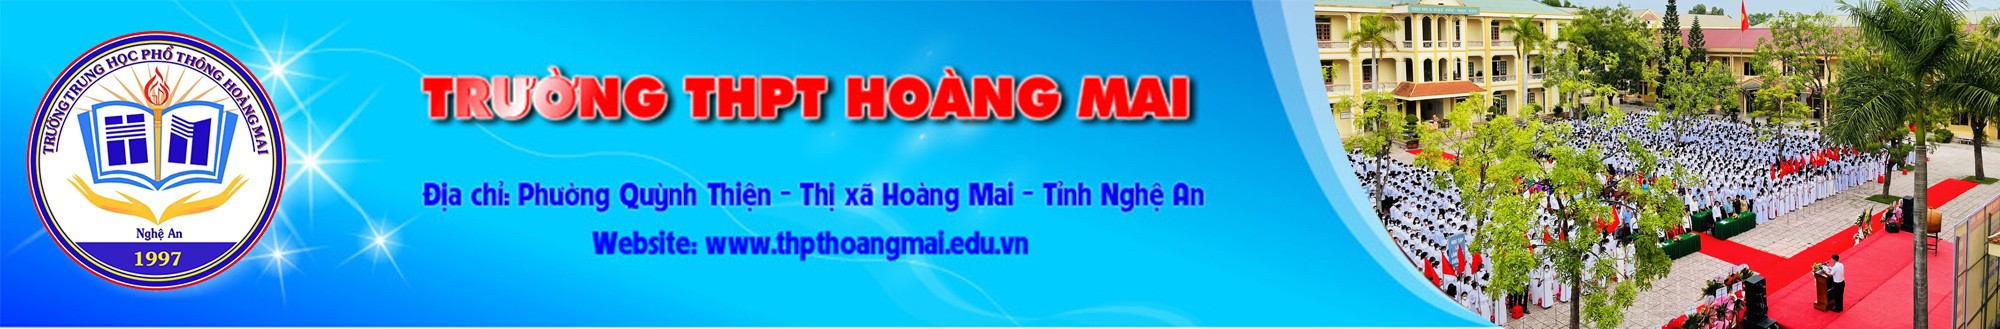 Trường THPT Hoàng Mai - Nghệ An